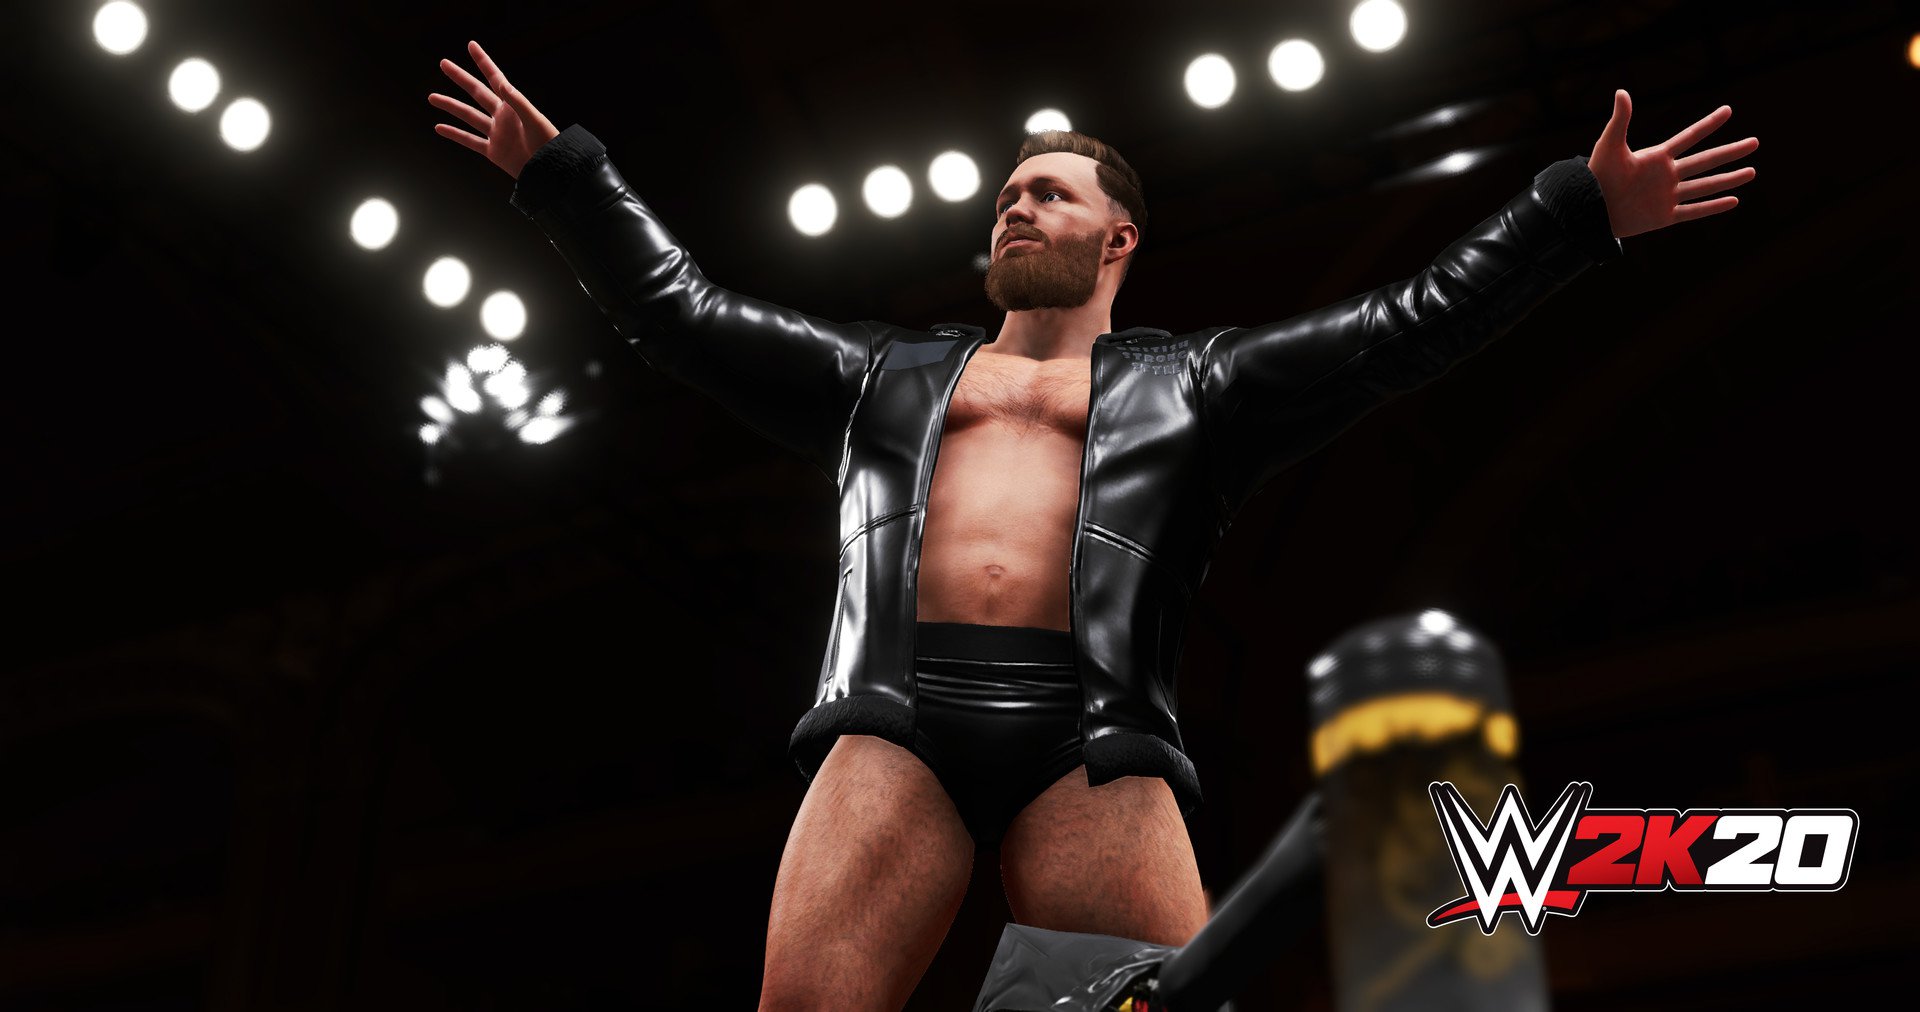 WWE 2K20 Digital Deluxe 5